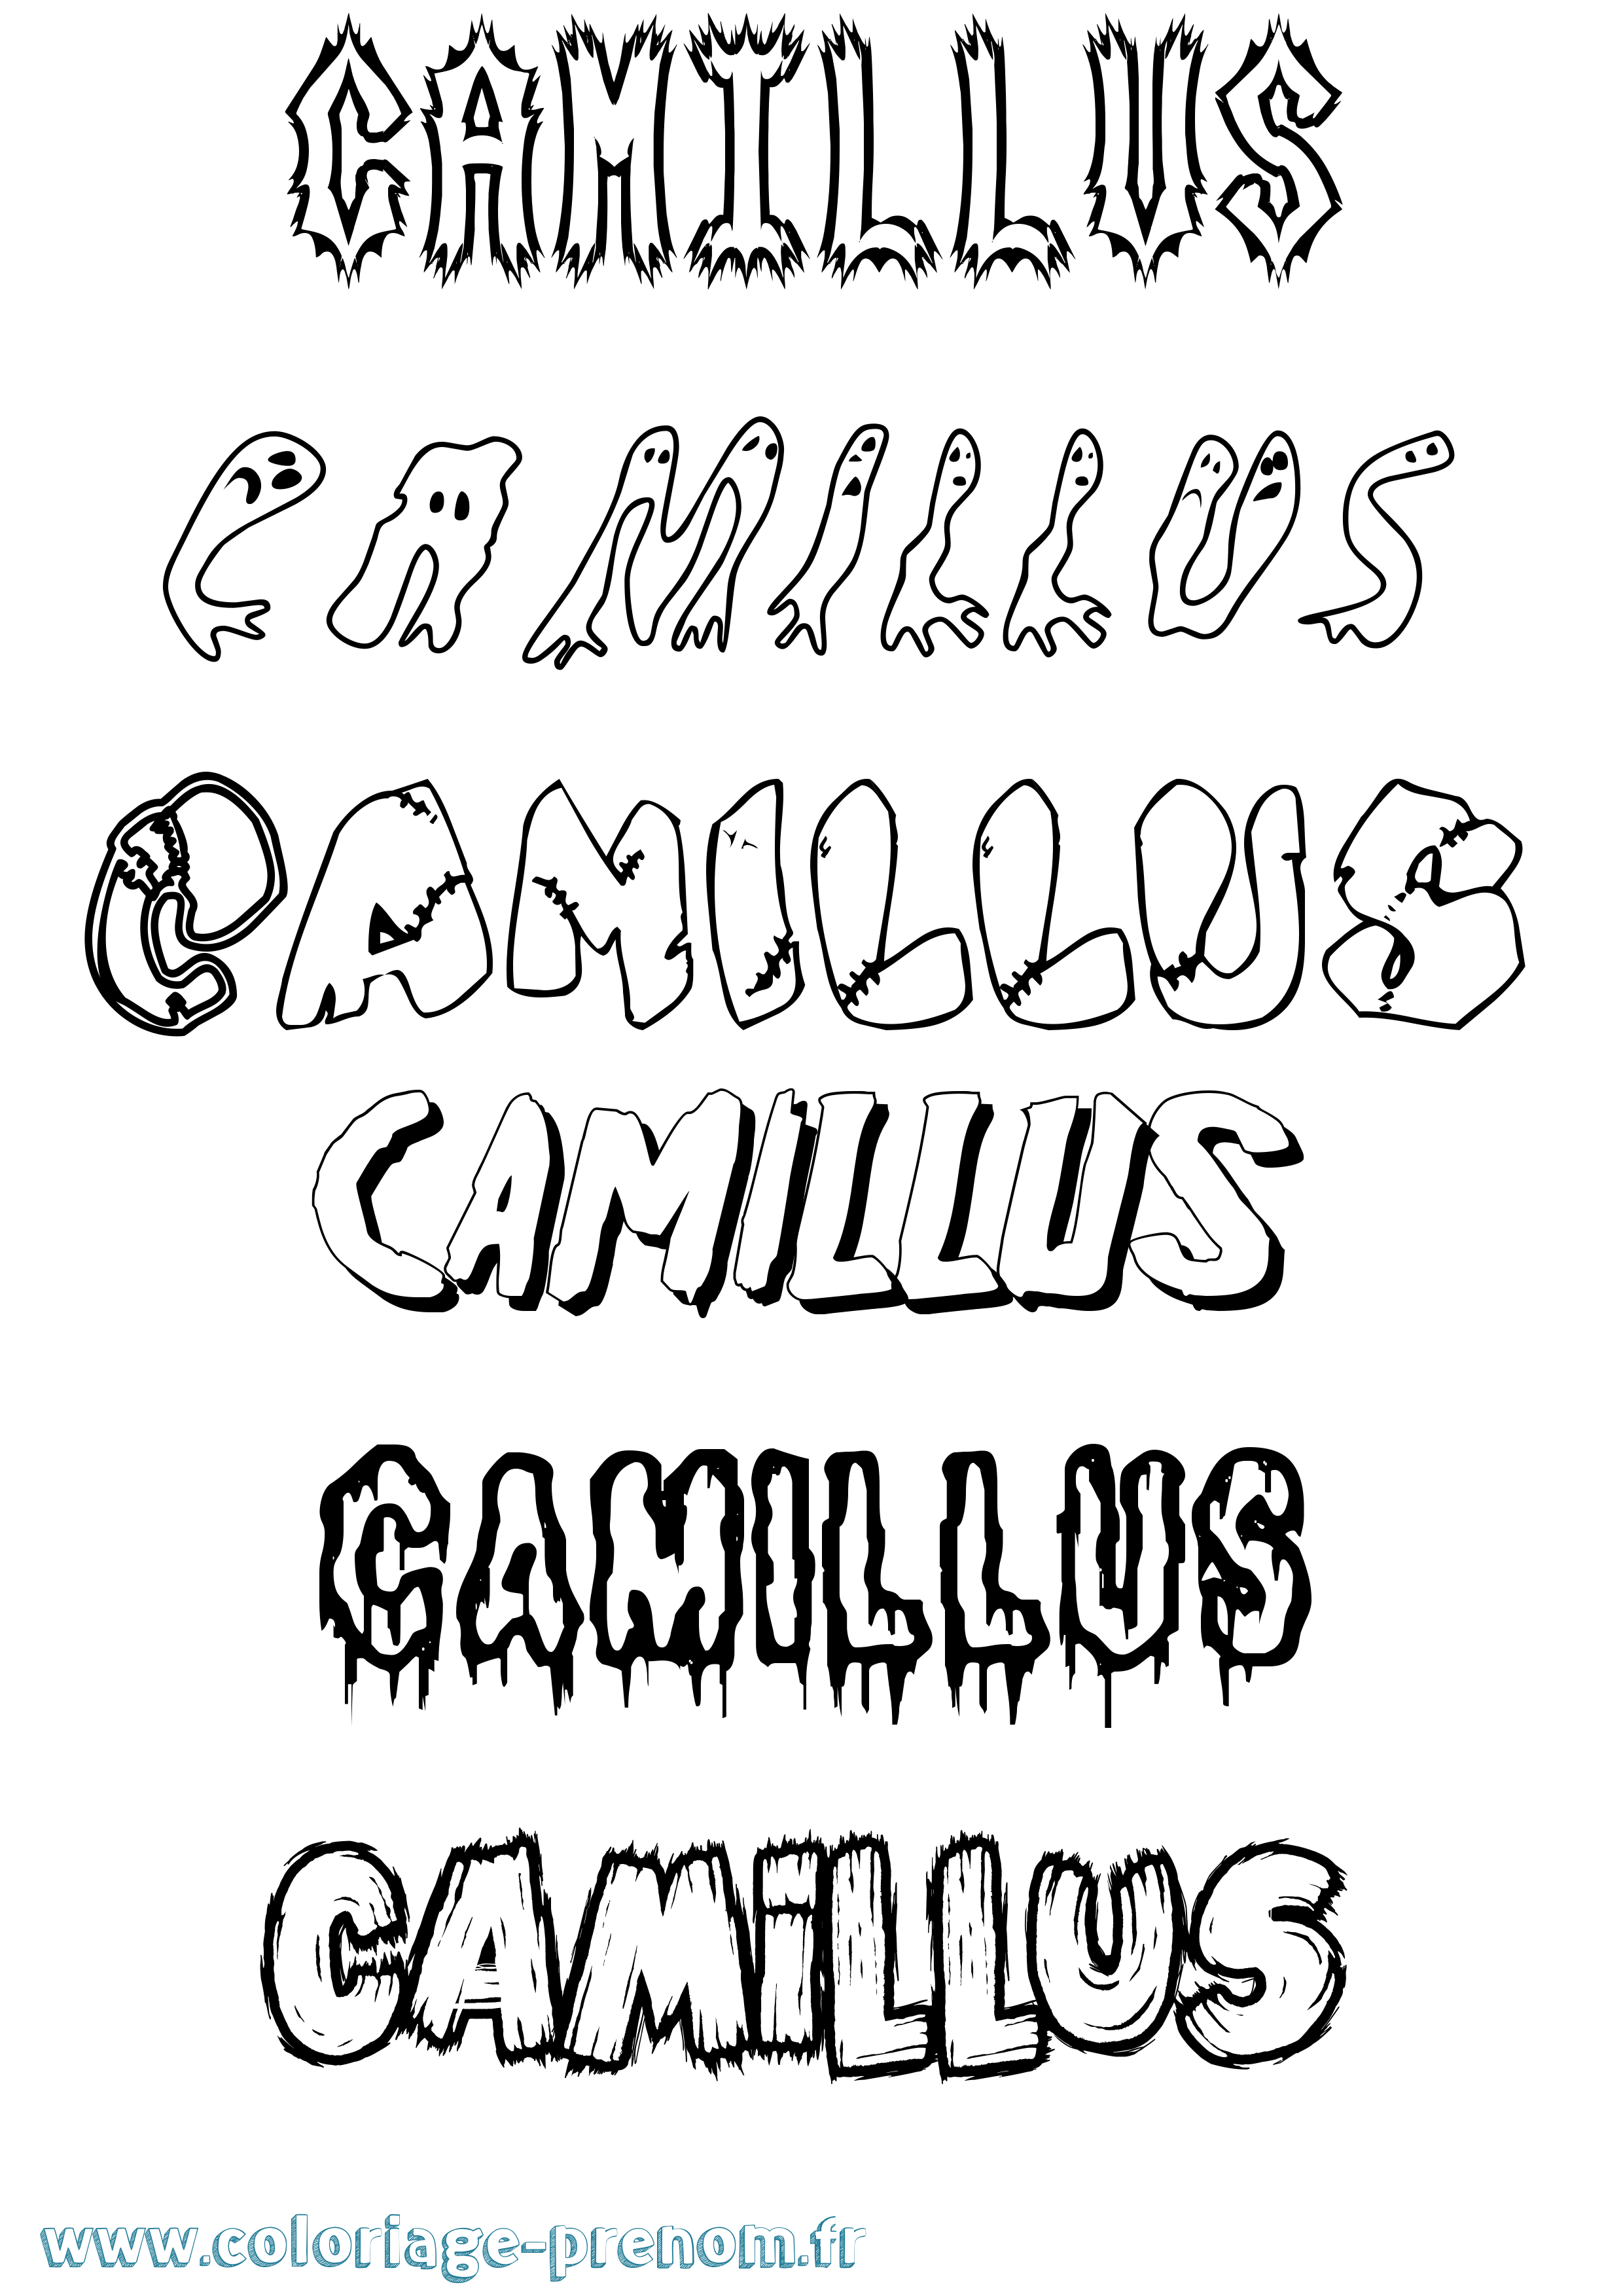 Coloriage prénom Camillus Frisson